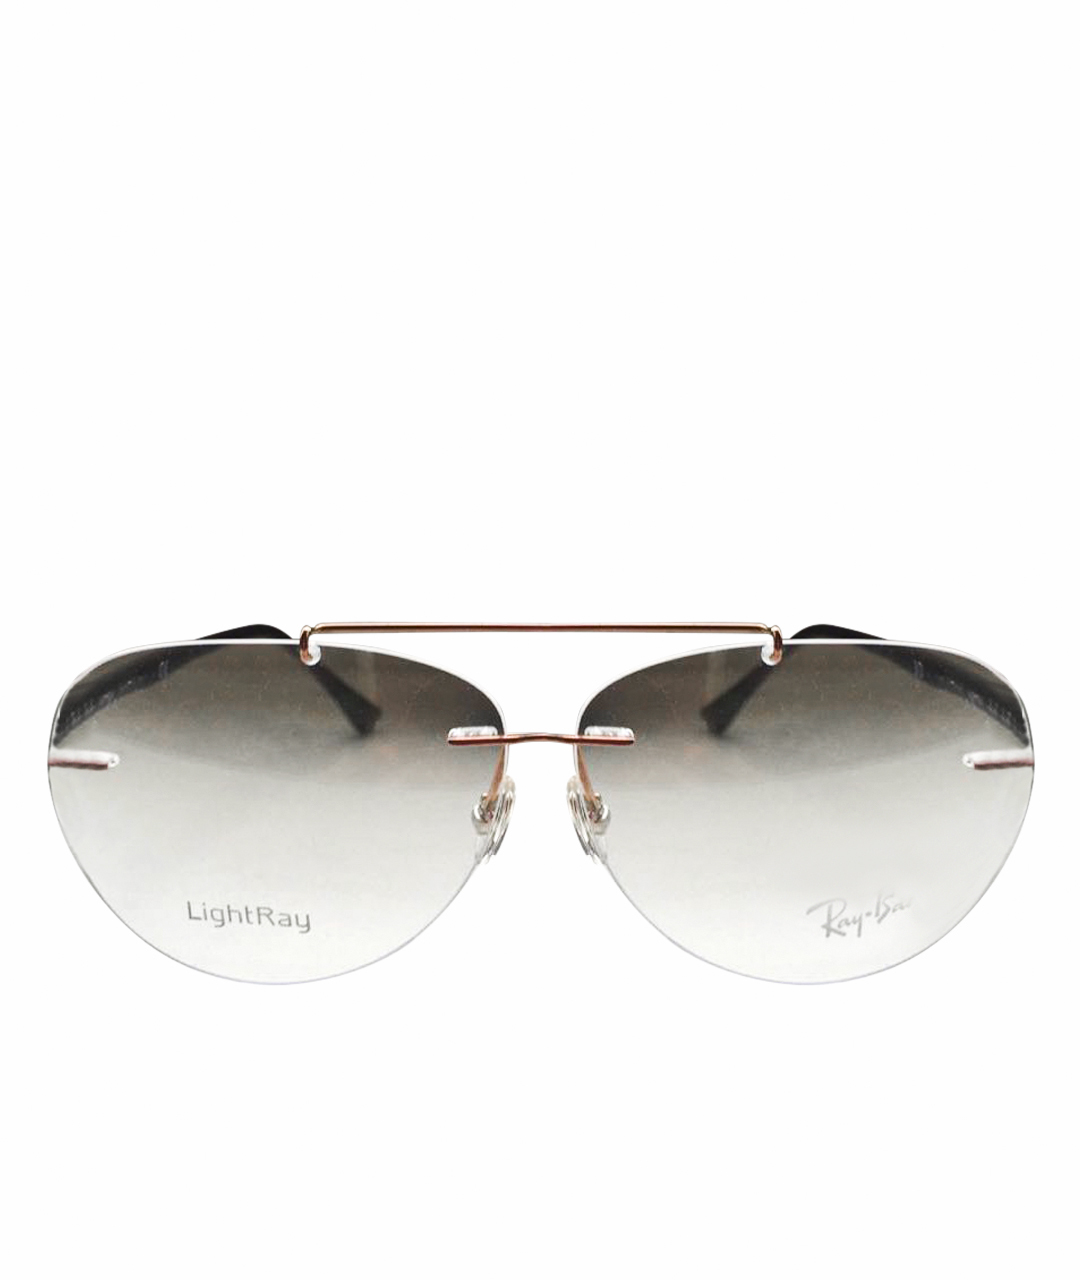 RAY BAN Золотые металлические солнцезащитные очки, фото 1